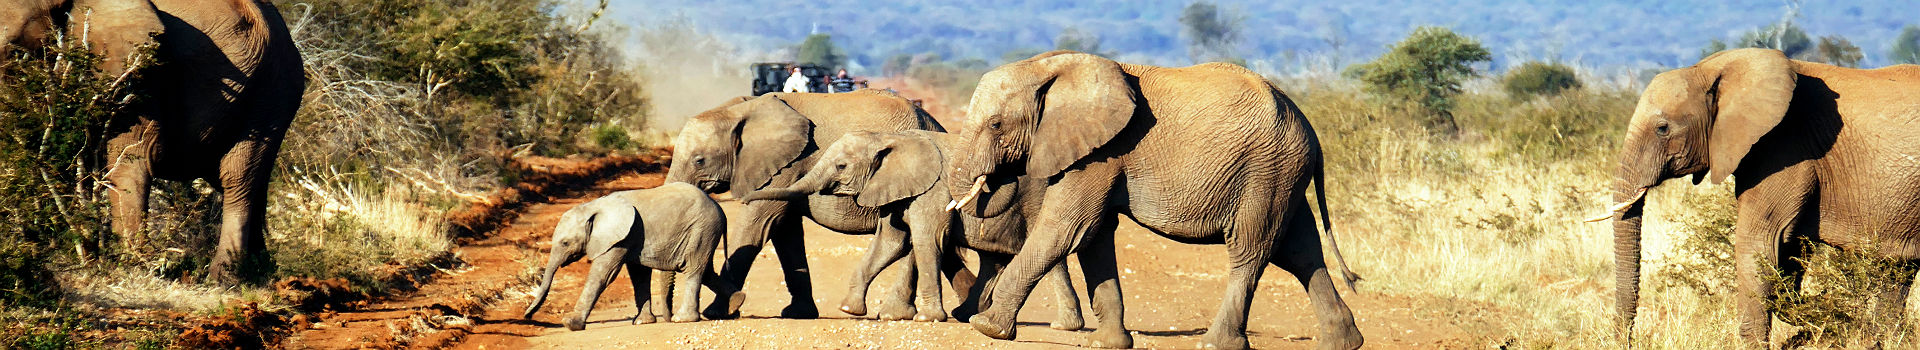 Afrique - Troupeau d'éléphants à la réserve naturelle Madikwe